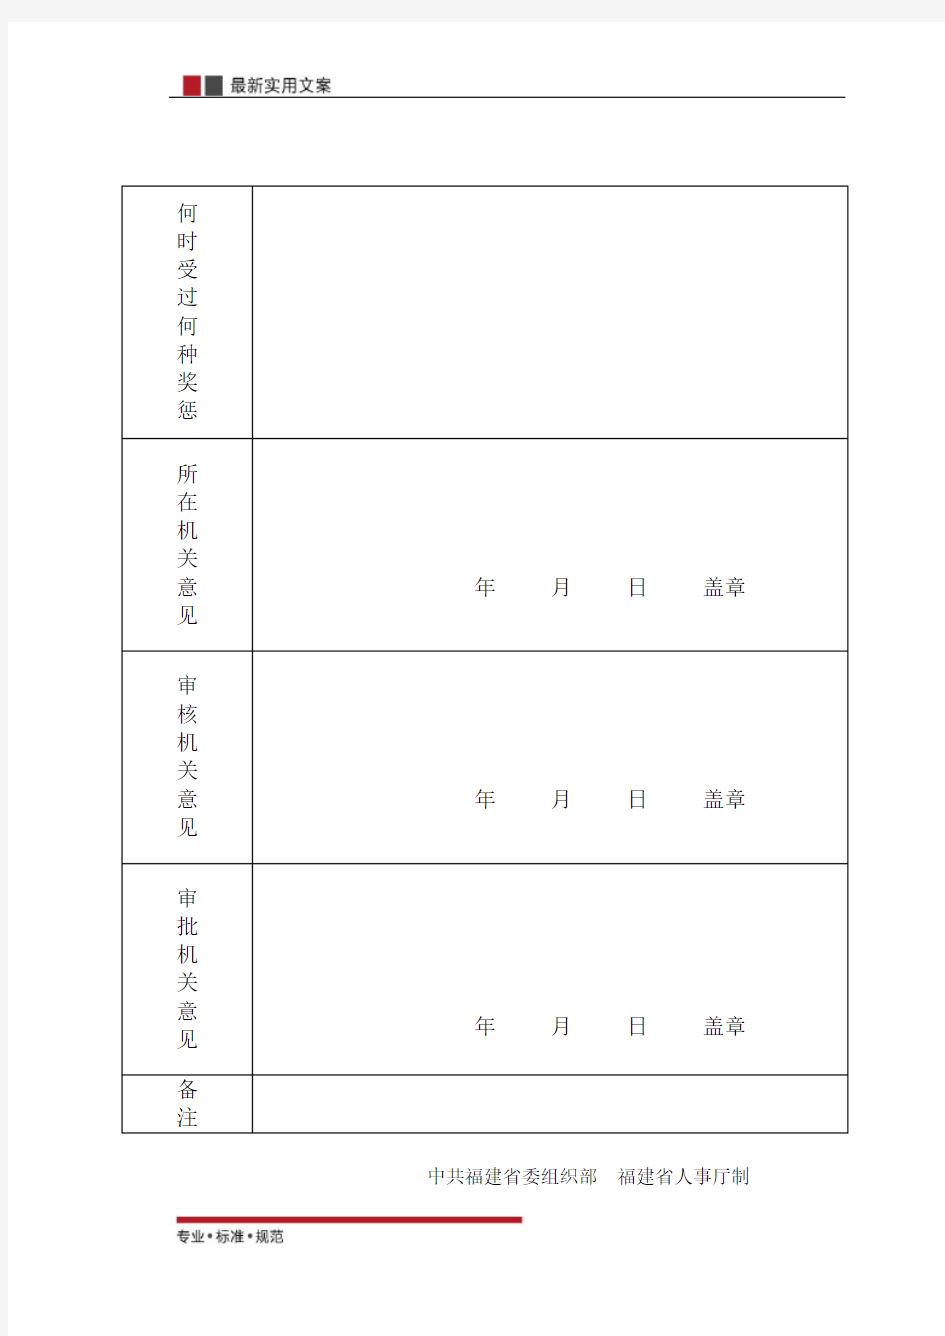 【范本】公务员登记表(标准模板)